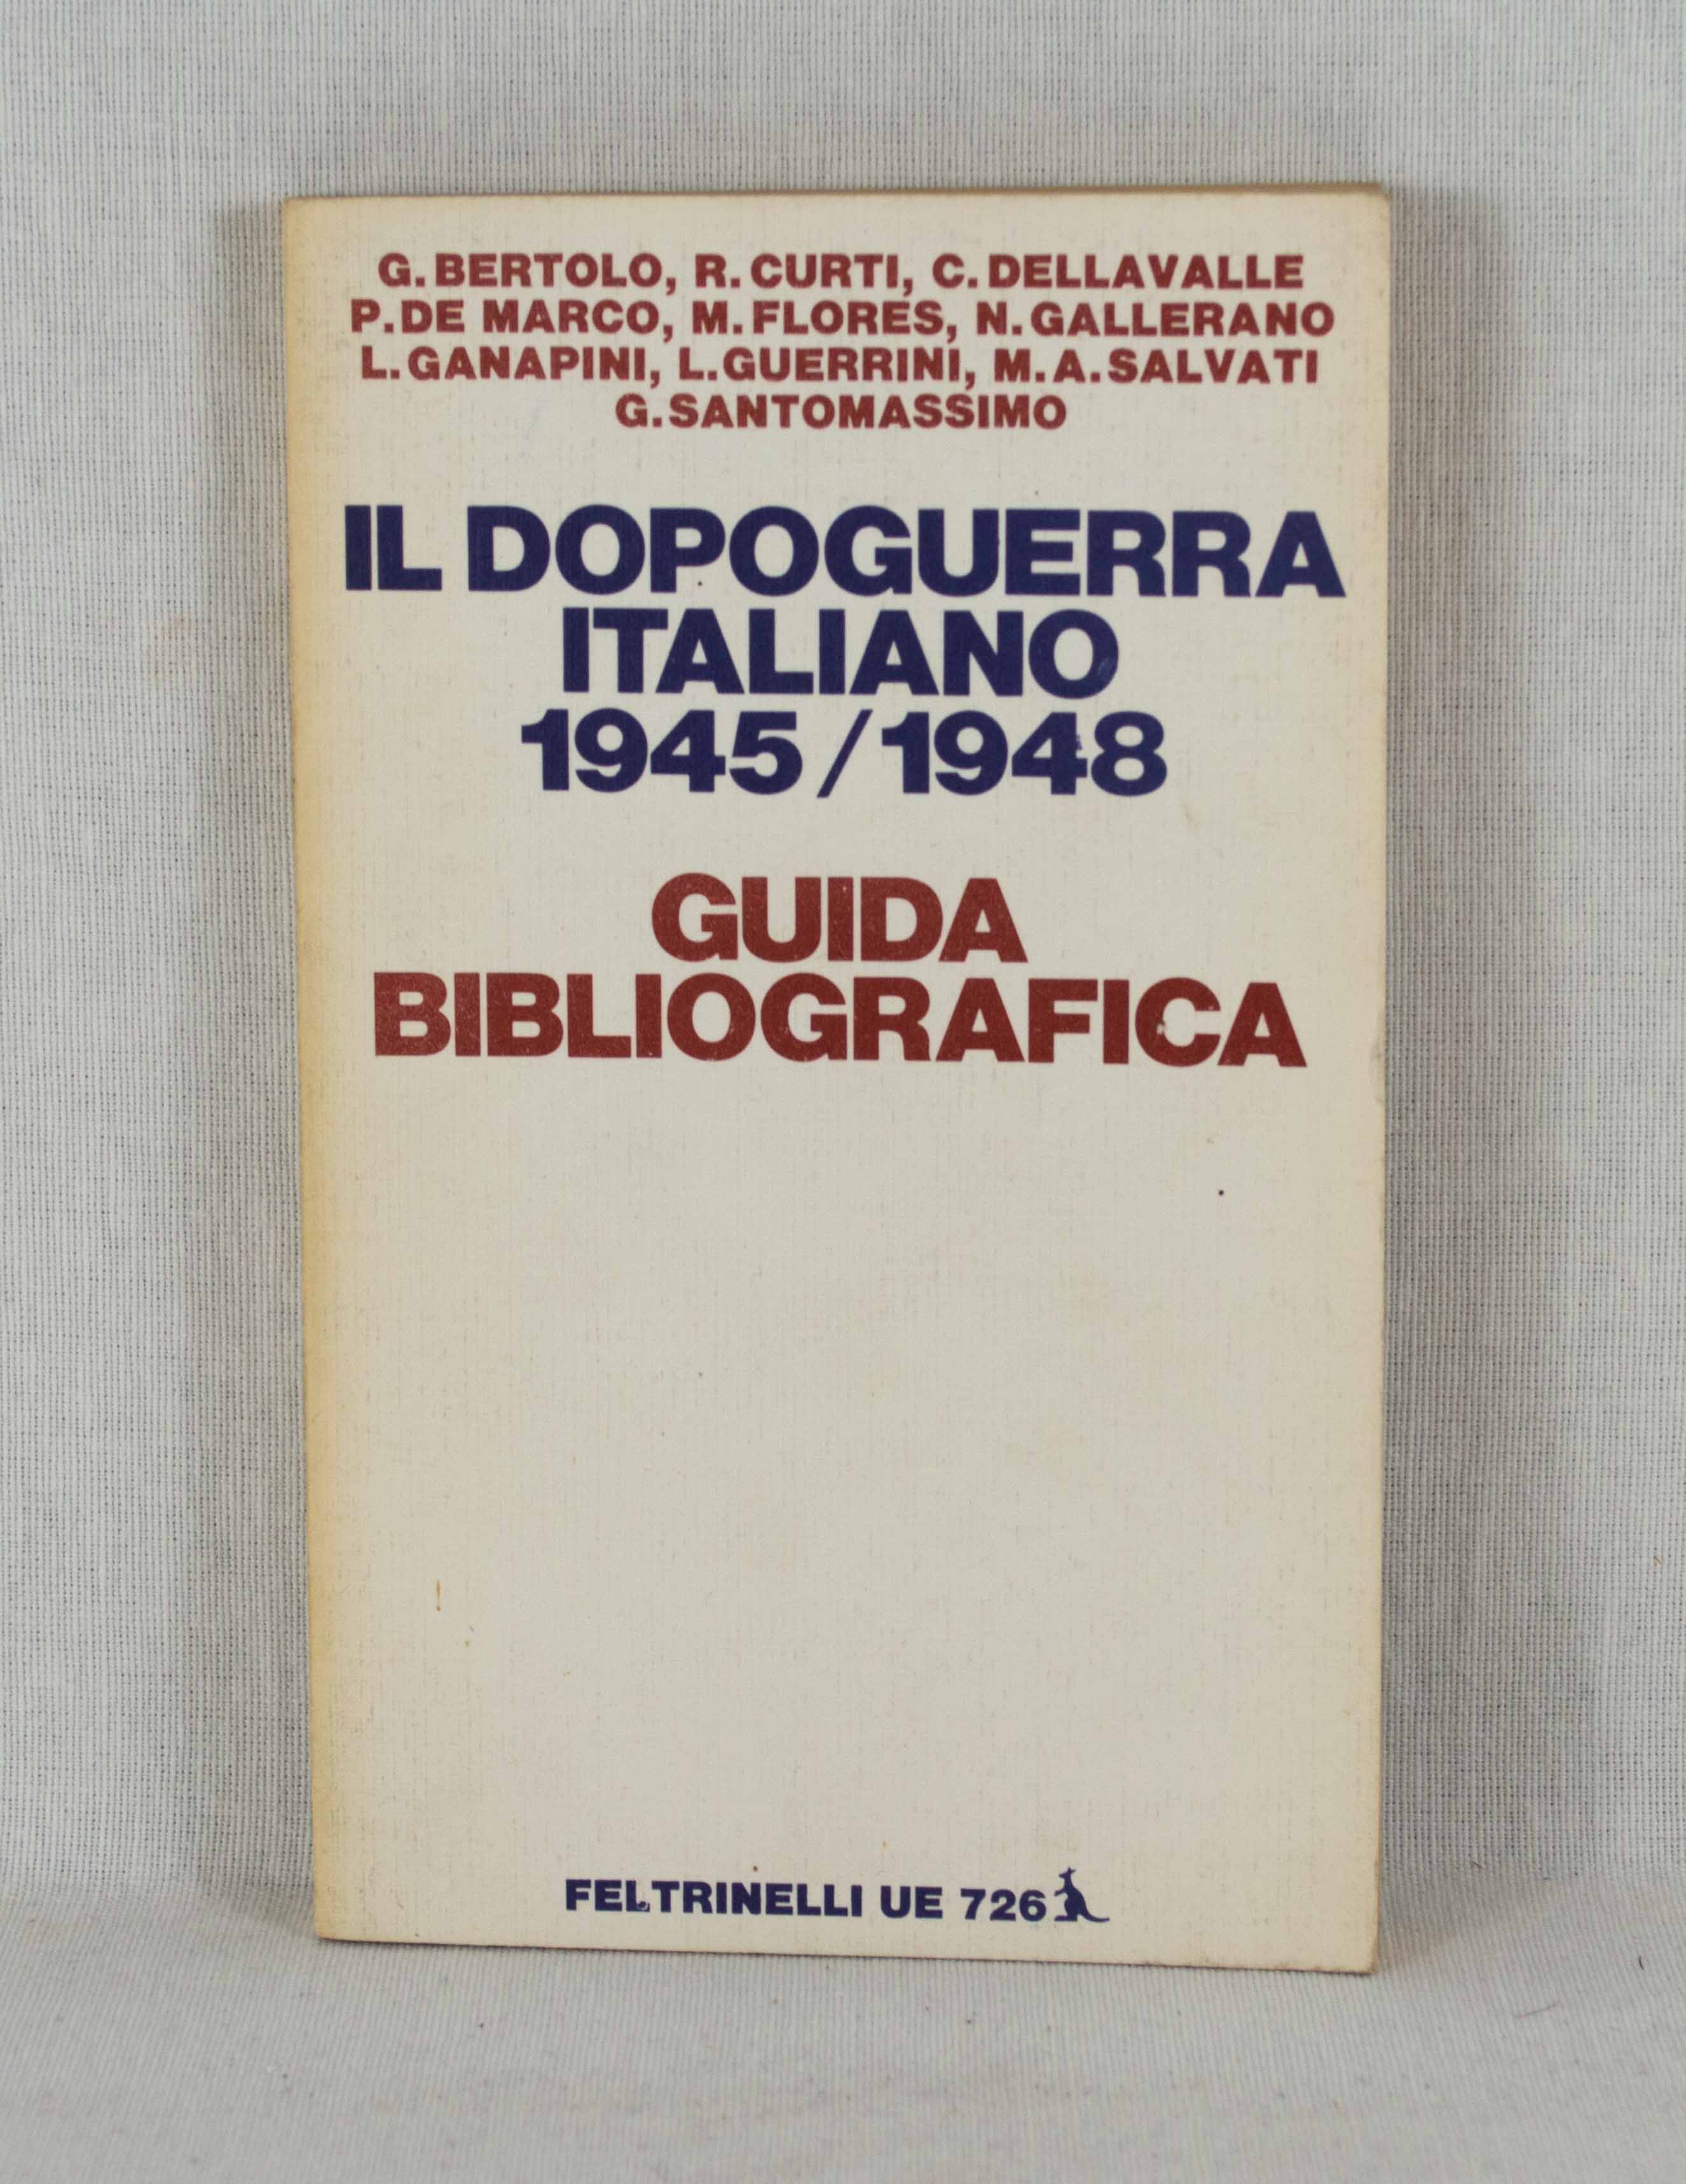 Il dopoguerra italiano 1945/1948: Guida bibliografica. by Bertolo, G ...